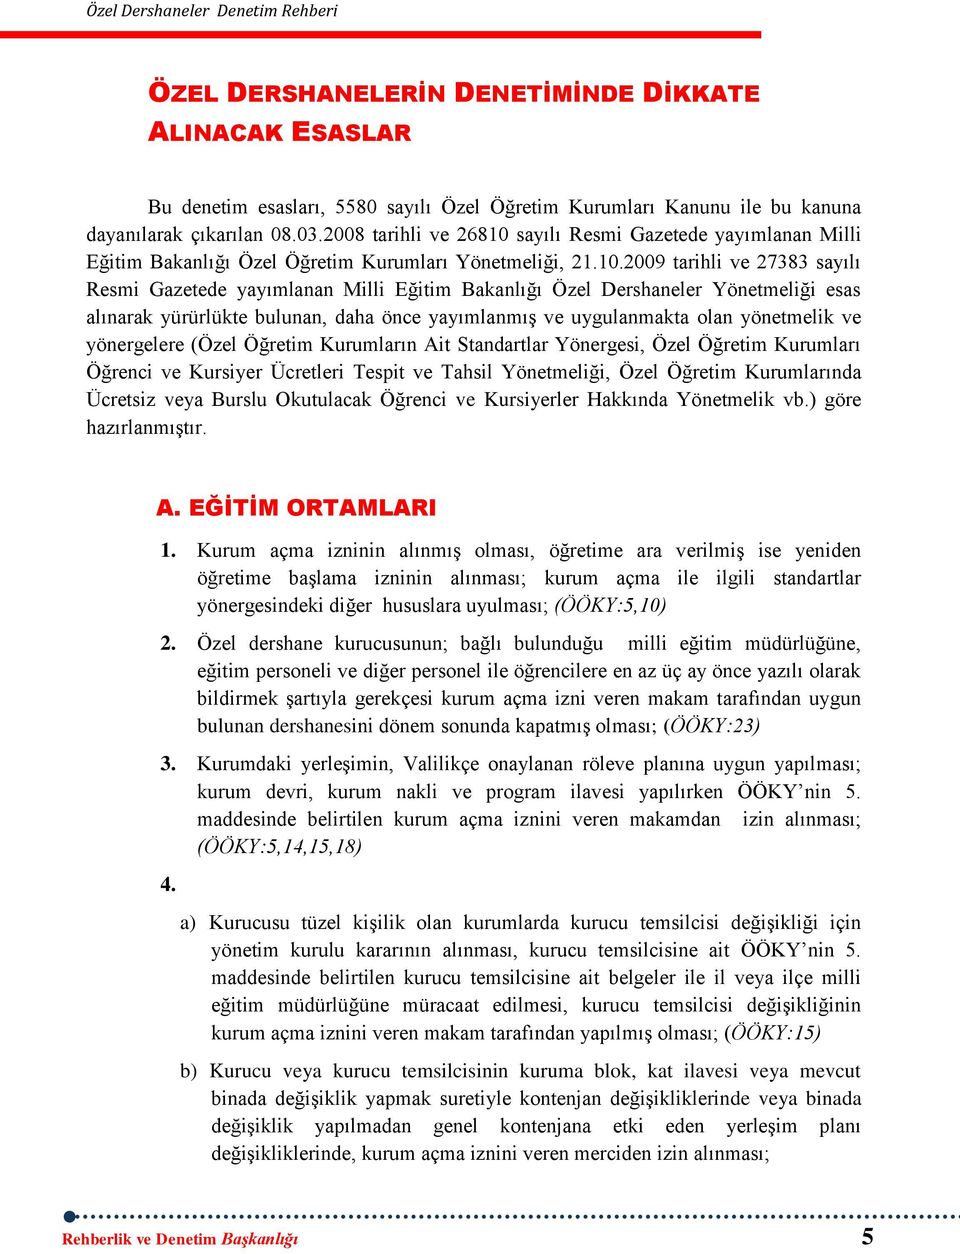 sayılı Resmi Gazetede yayımlanan Milli Eğitim Bakanlığı Özel Öğretim Kurumları Yönetmeliği, 21.10.